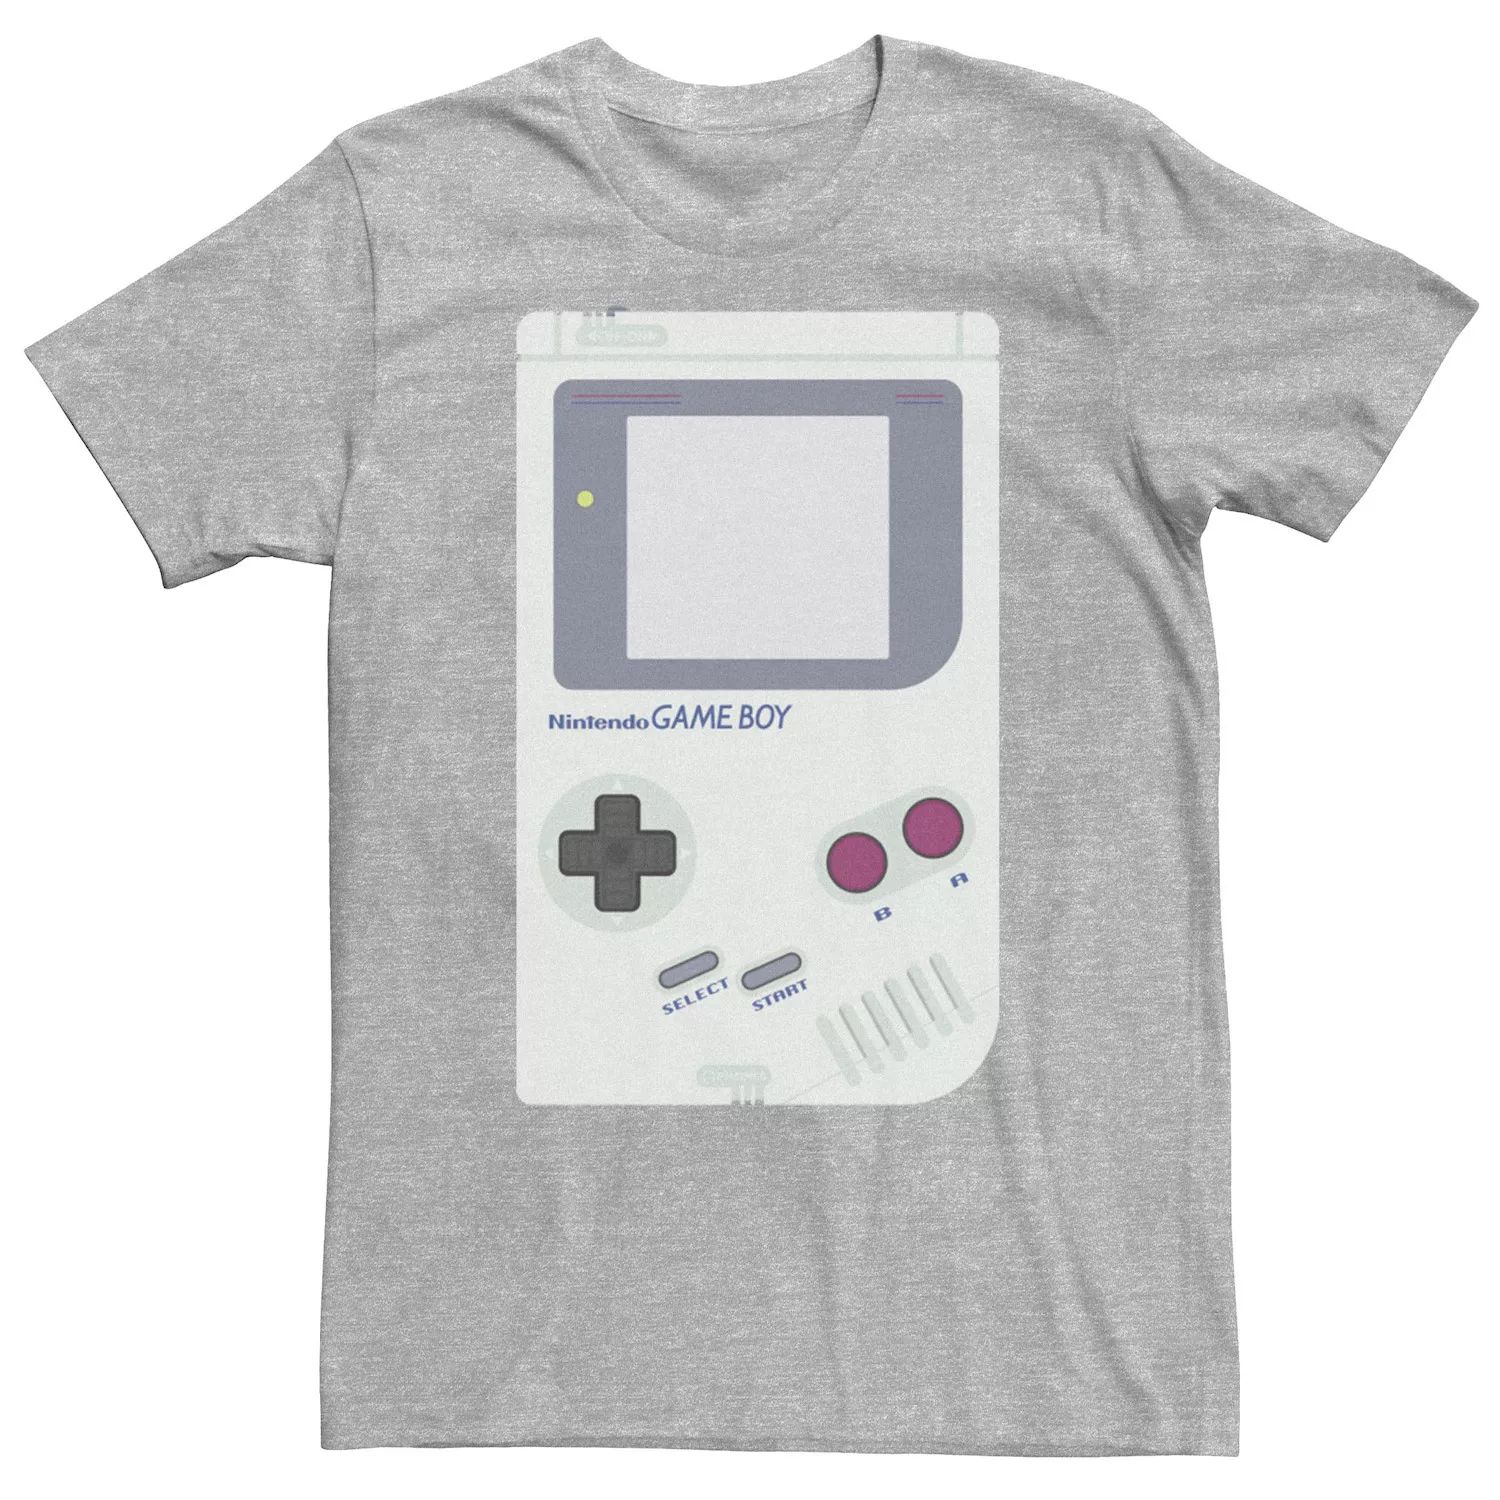 Мужская футболка для портативной консоли Nintendo Game Boy Licensed Character аксессуар для портативной консоли nintendo game